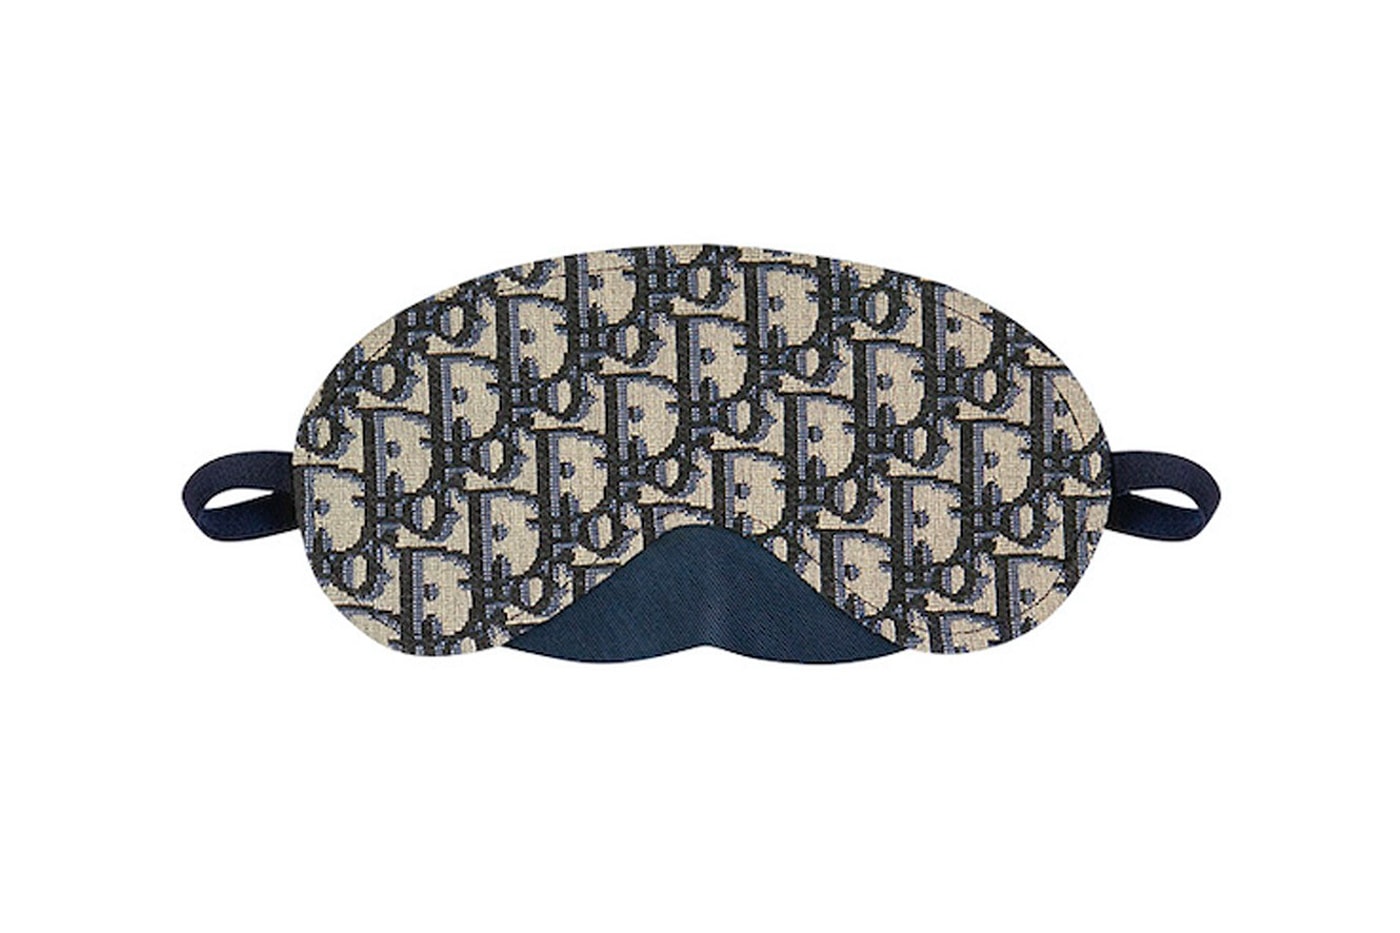 ディオール Dior Men First-Ever Homewear Kit Release Info Oblique Jacquard fashion slipper pouch eye mask stole navy blue black beige